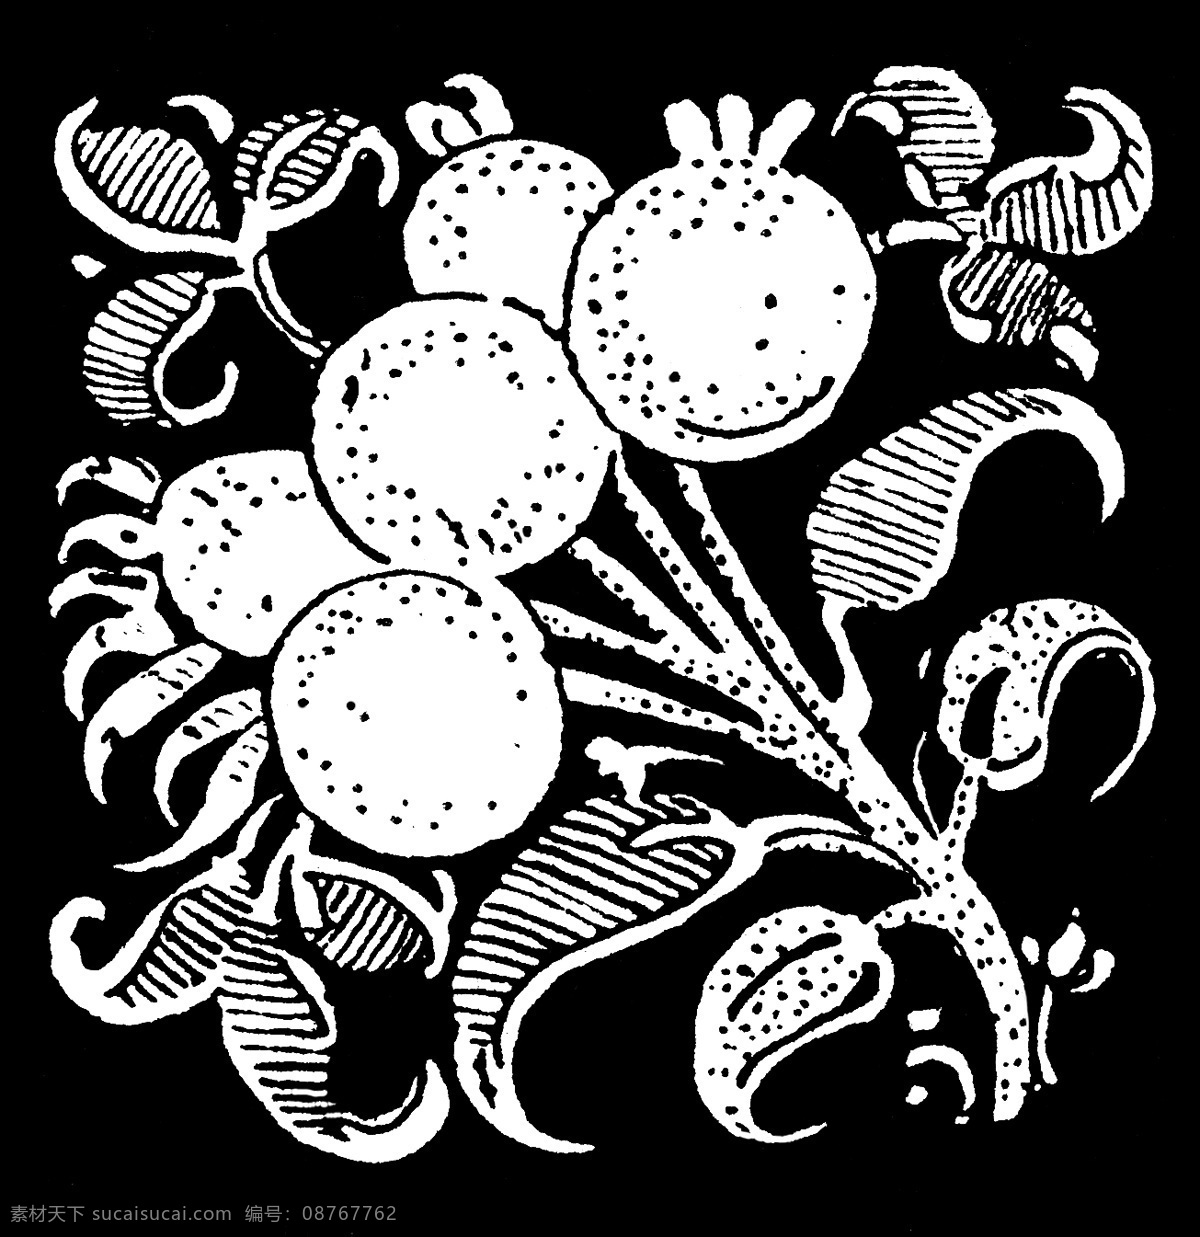 黑白花纹背景 黑白 图案 植物 手绘 复古 黑白图案 背景底纹 底纹边框 黑色